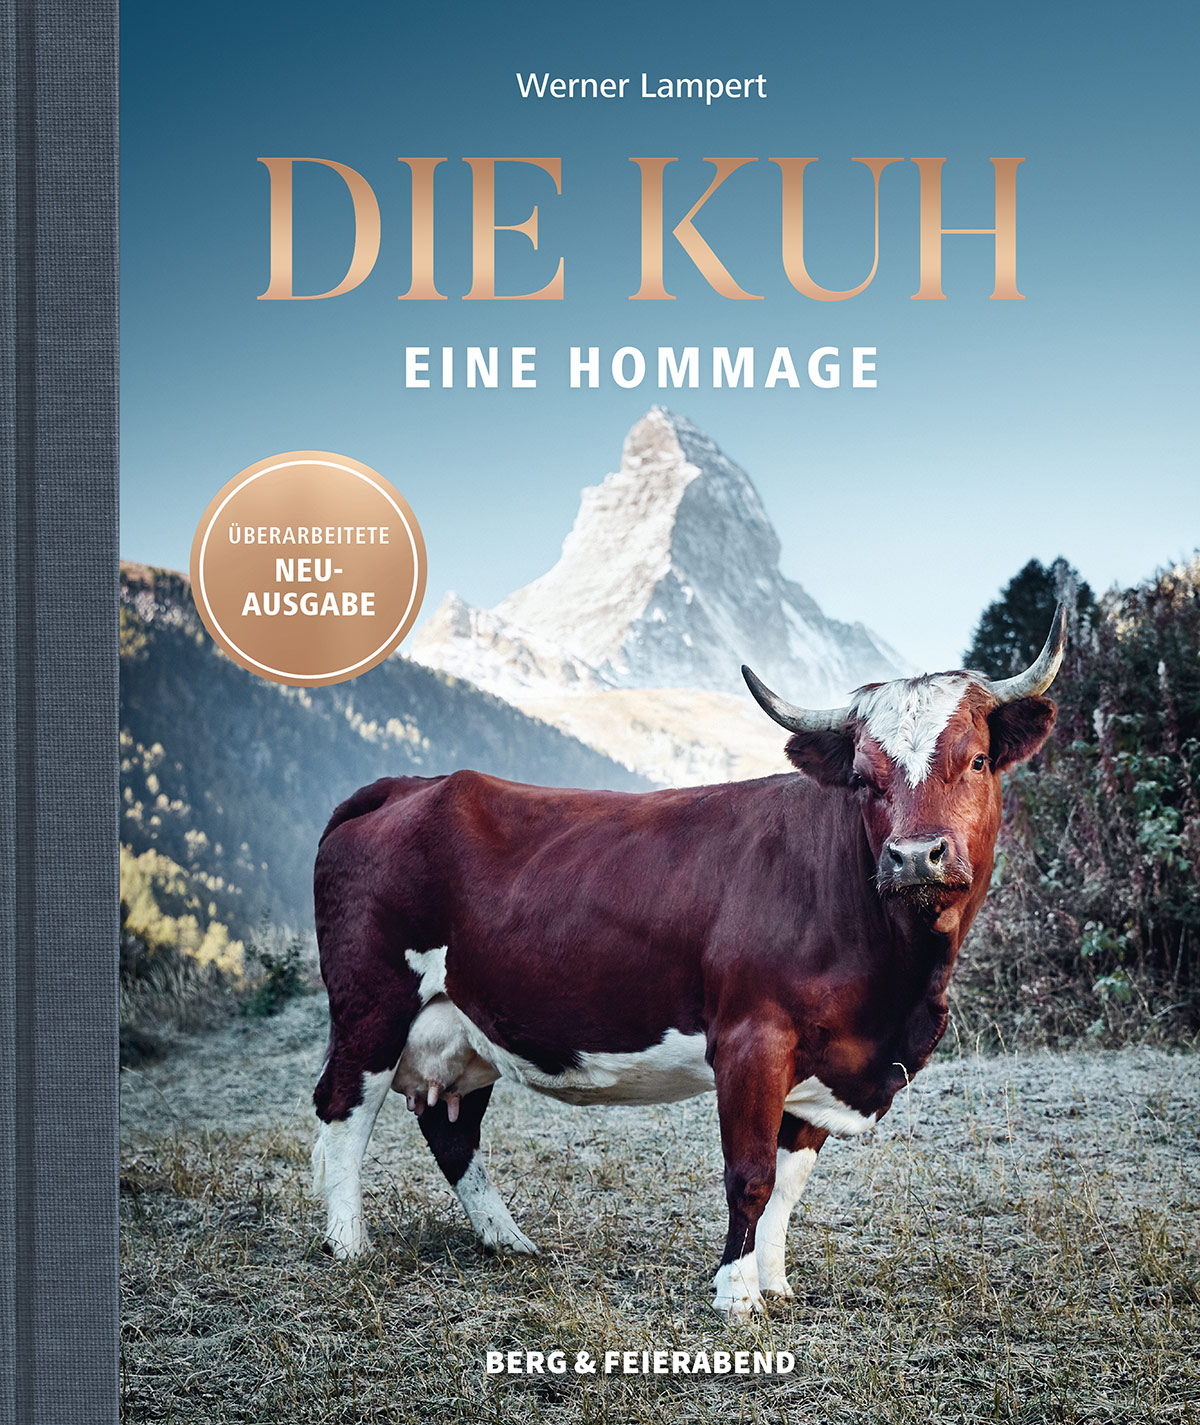 Das neue Buch von Werner Lampert als Hommage an die Kuh ©Ramona Waldner